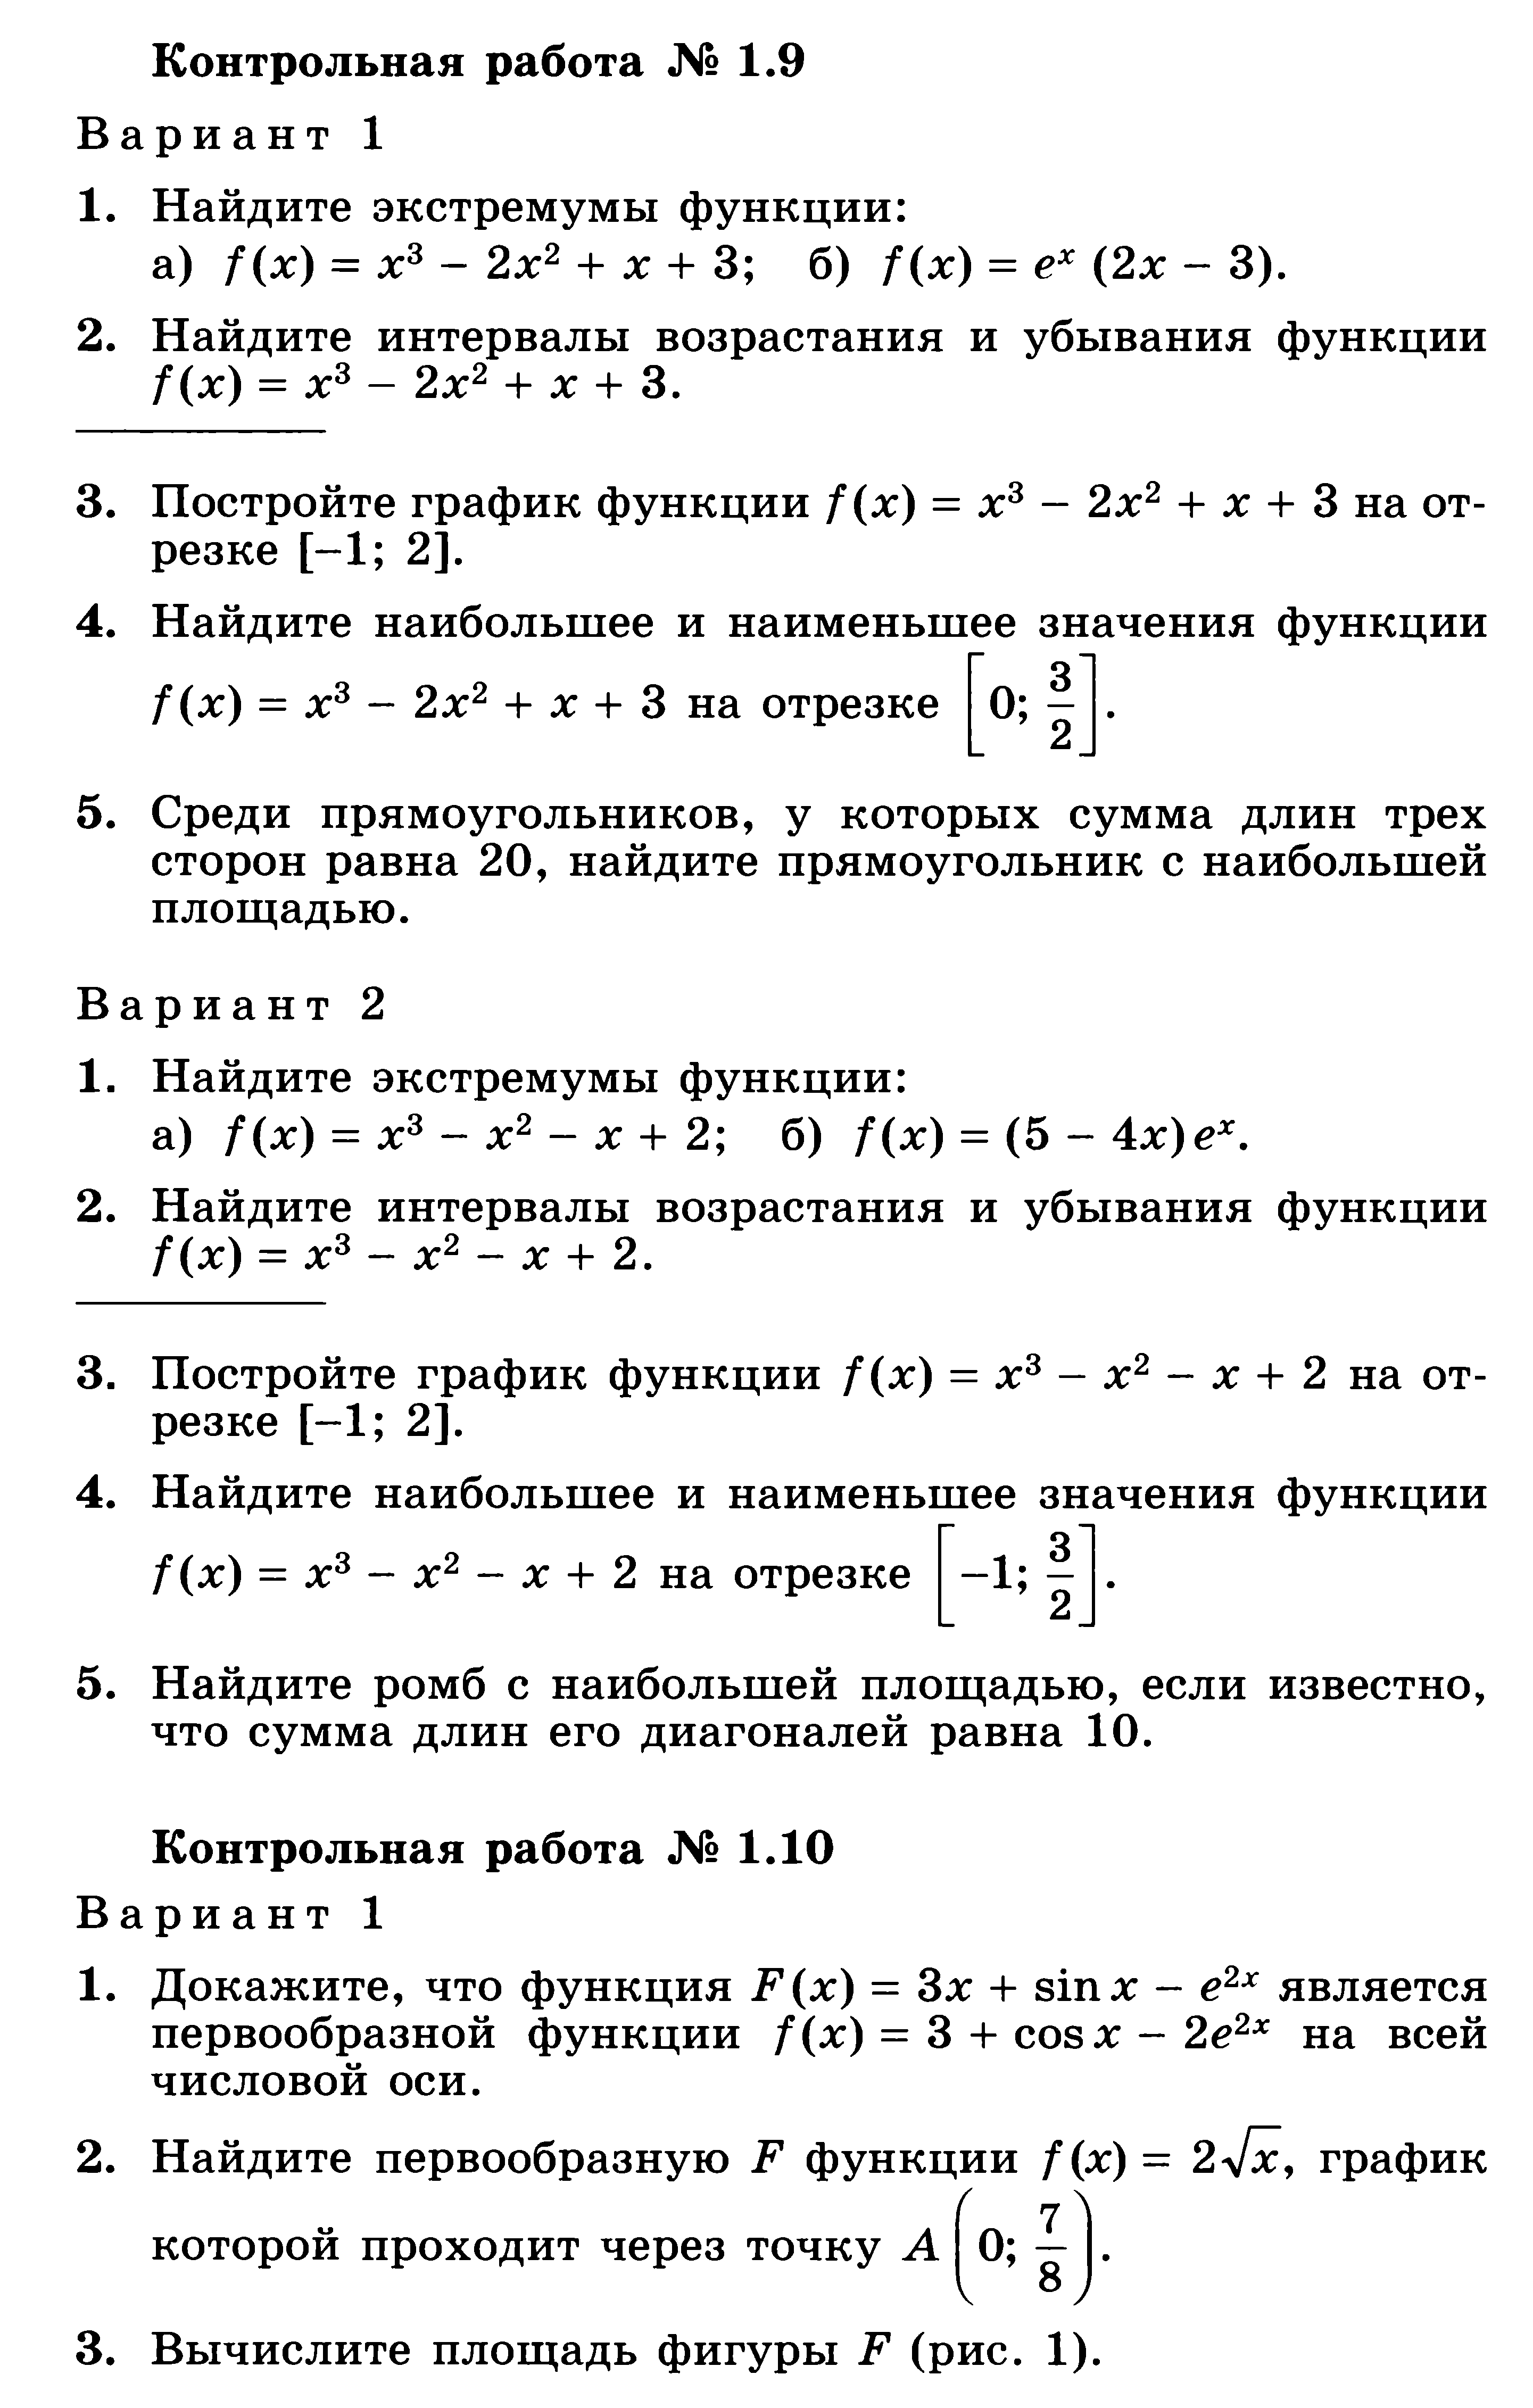 Рабочая программа по алгебре для 11 класса (уч. Ш.А. Алимова и др.)